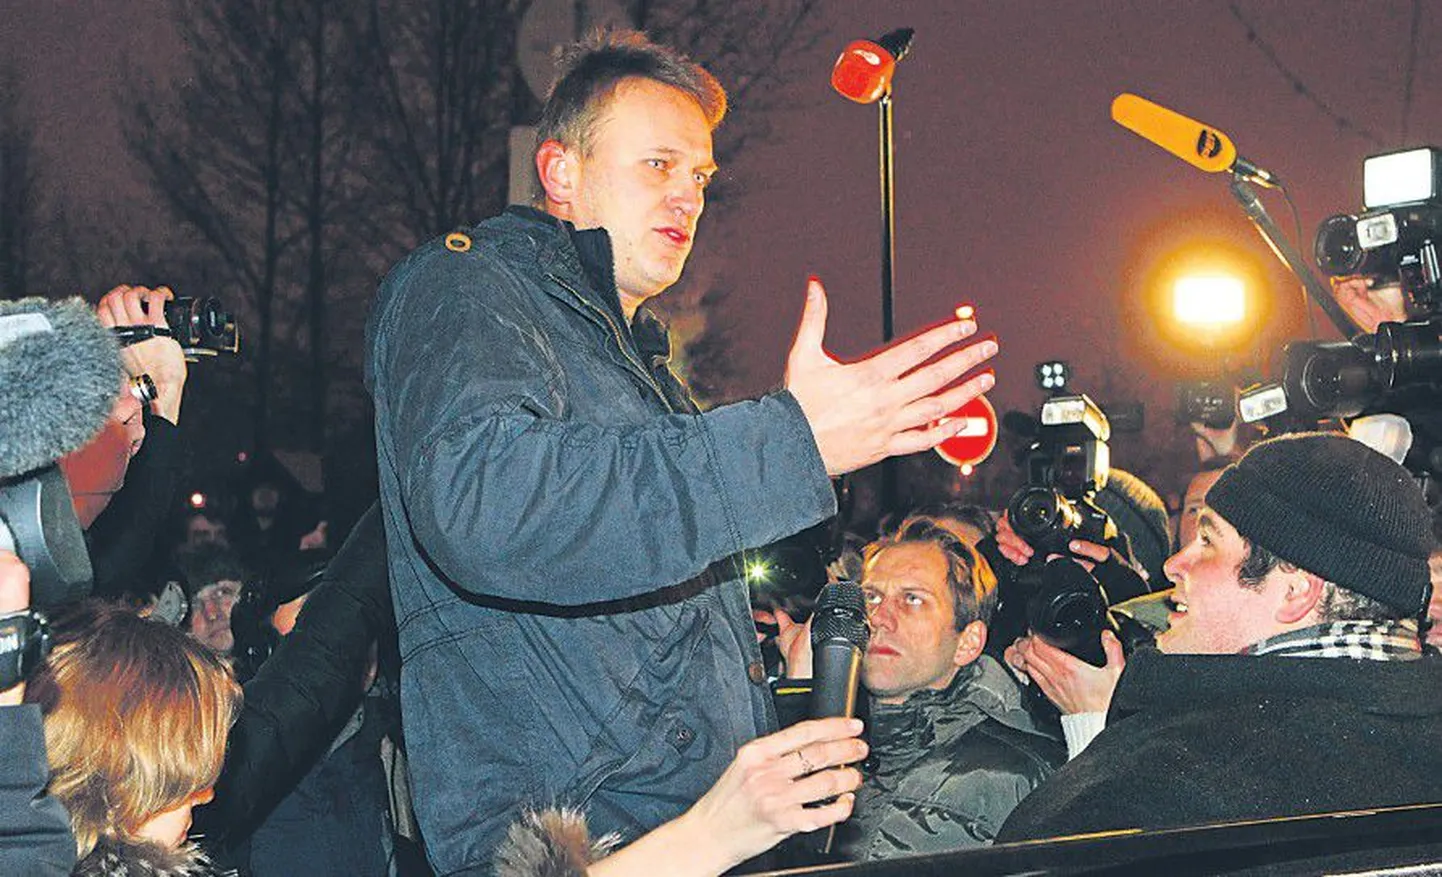 Алексея Навального, отсидевшего 15 суток за неповиновение полиции на митинге 5 декабря, встречали овациями и цветами.